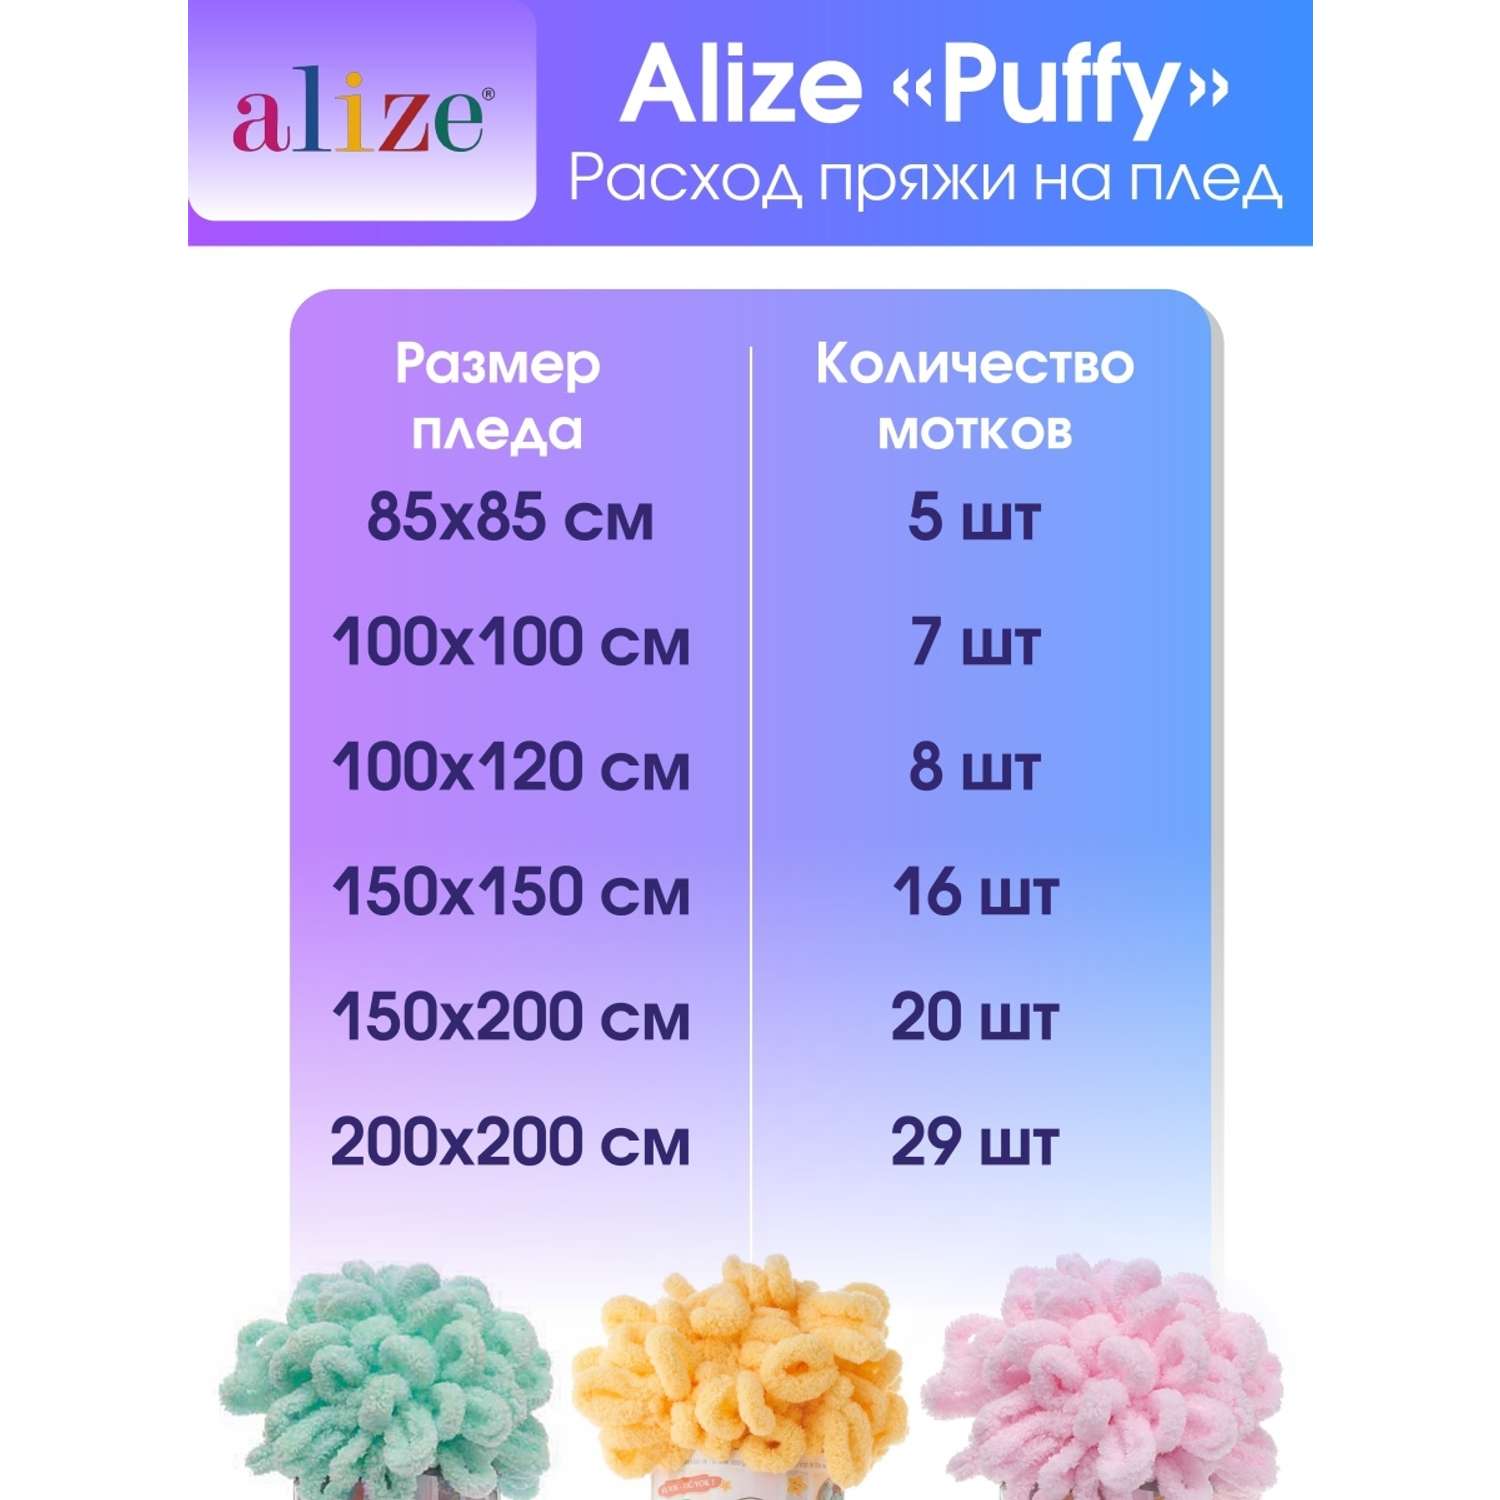 Пряжа для вязания Alize puffy 100 г 9 м микрополиэстер фантазийная плюшевая 107 фуксия 5 мотков - фото 6